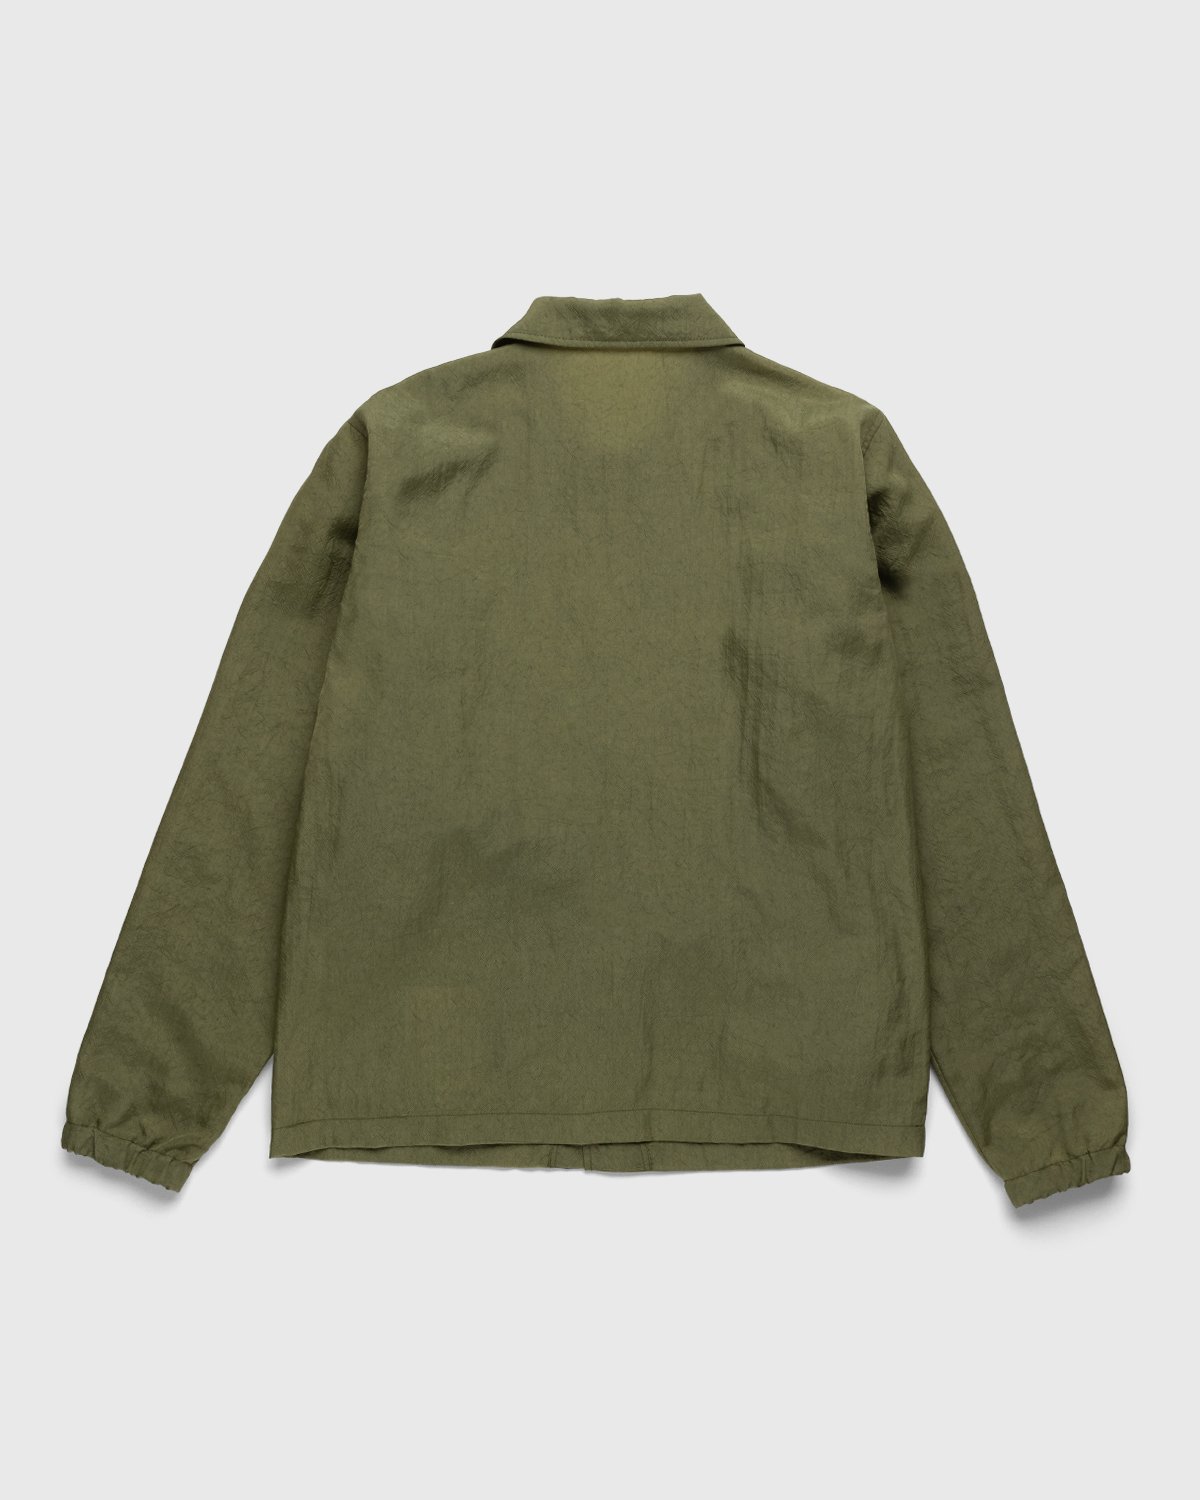 Highsnobiety - Stonewashed Nylon Coach Jacket Olive - Clothing - Green - Image 2